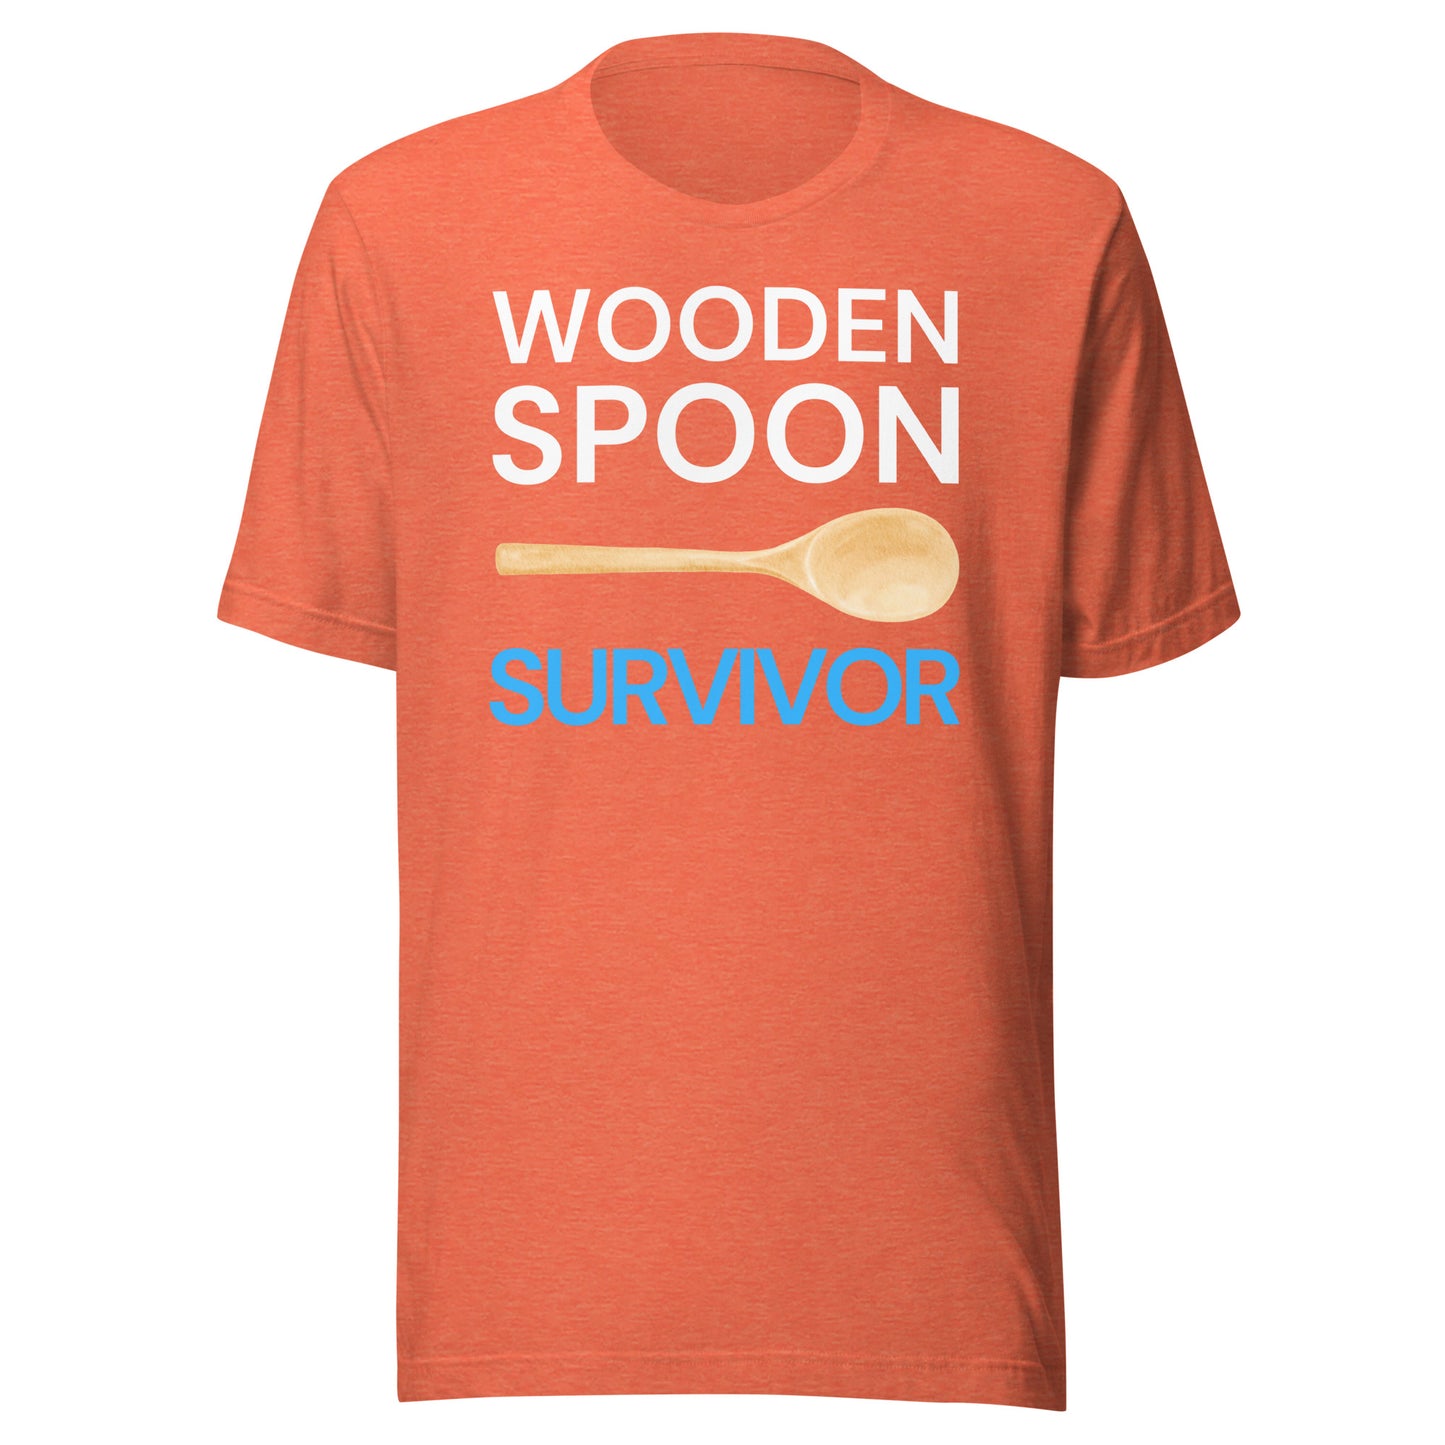 WOODEN SPOON SURVIVOR Unisex T-Shirt